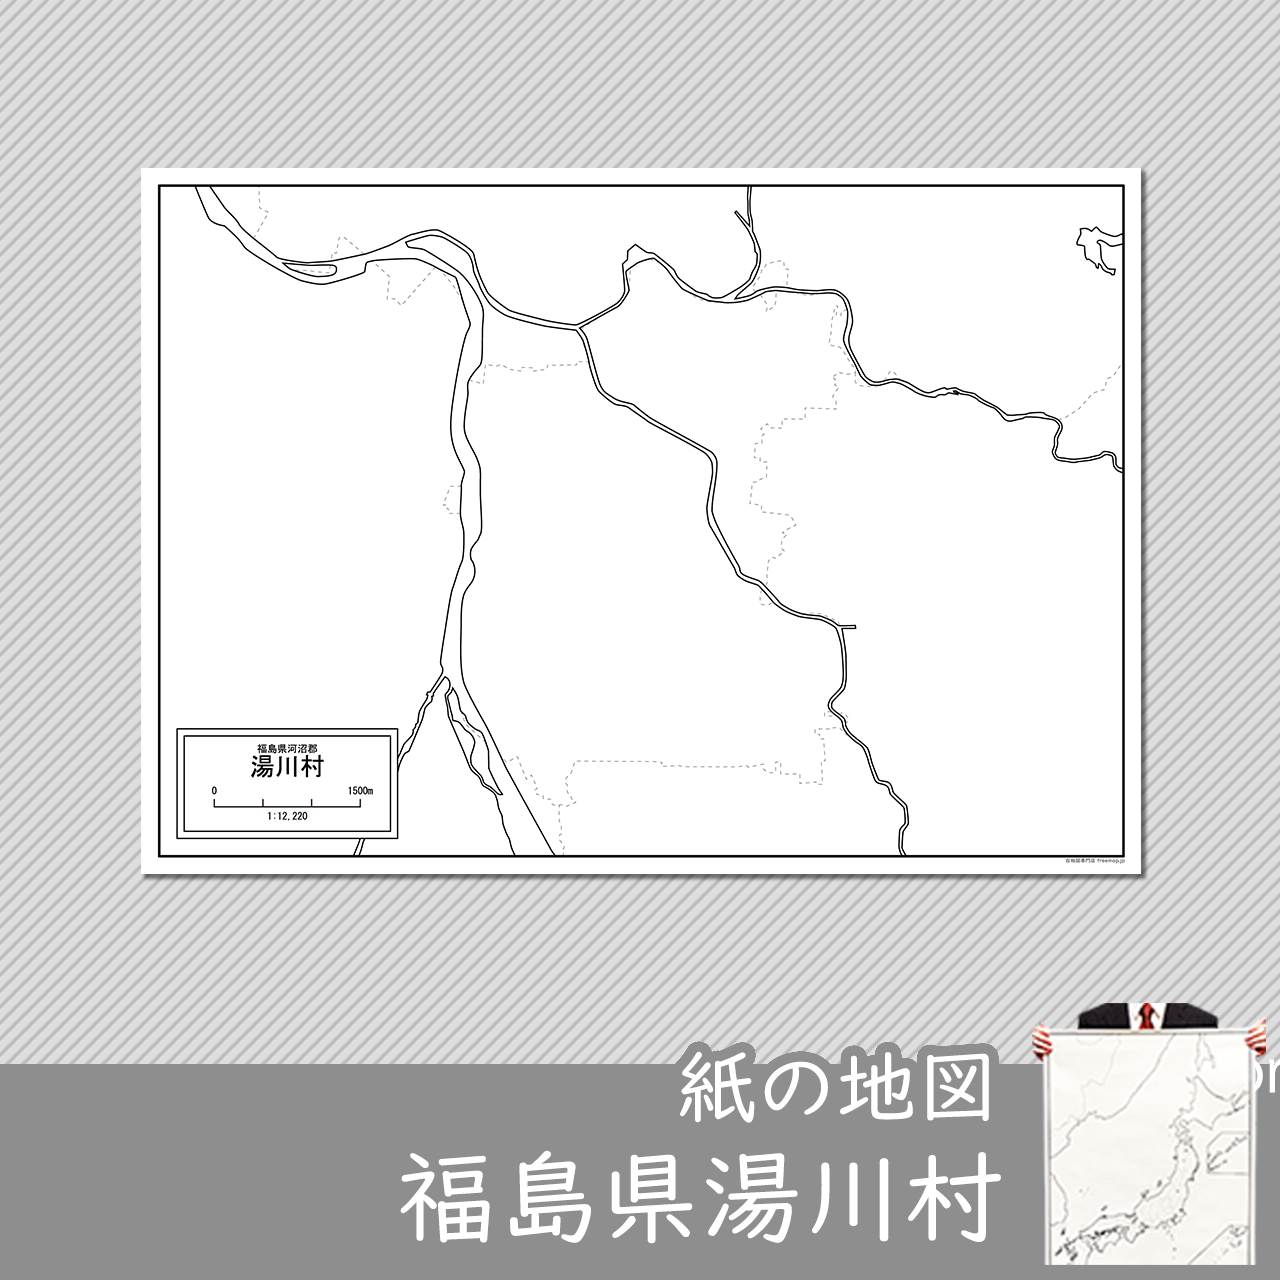 湯川村の紙の白地図のサムネイル